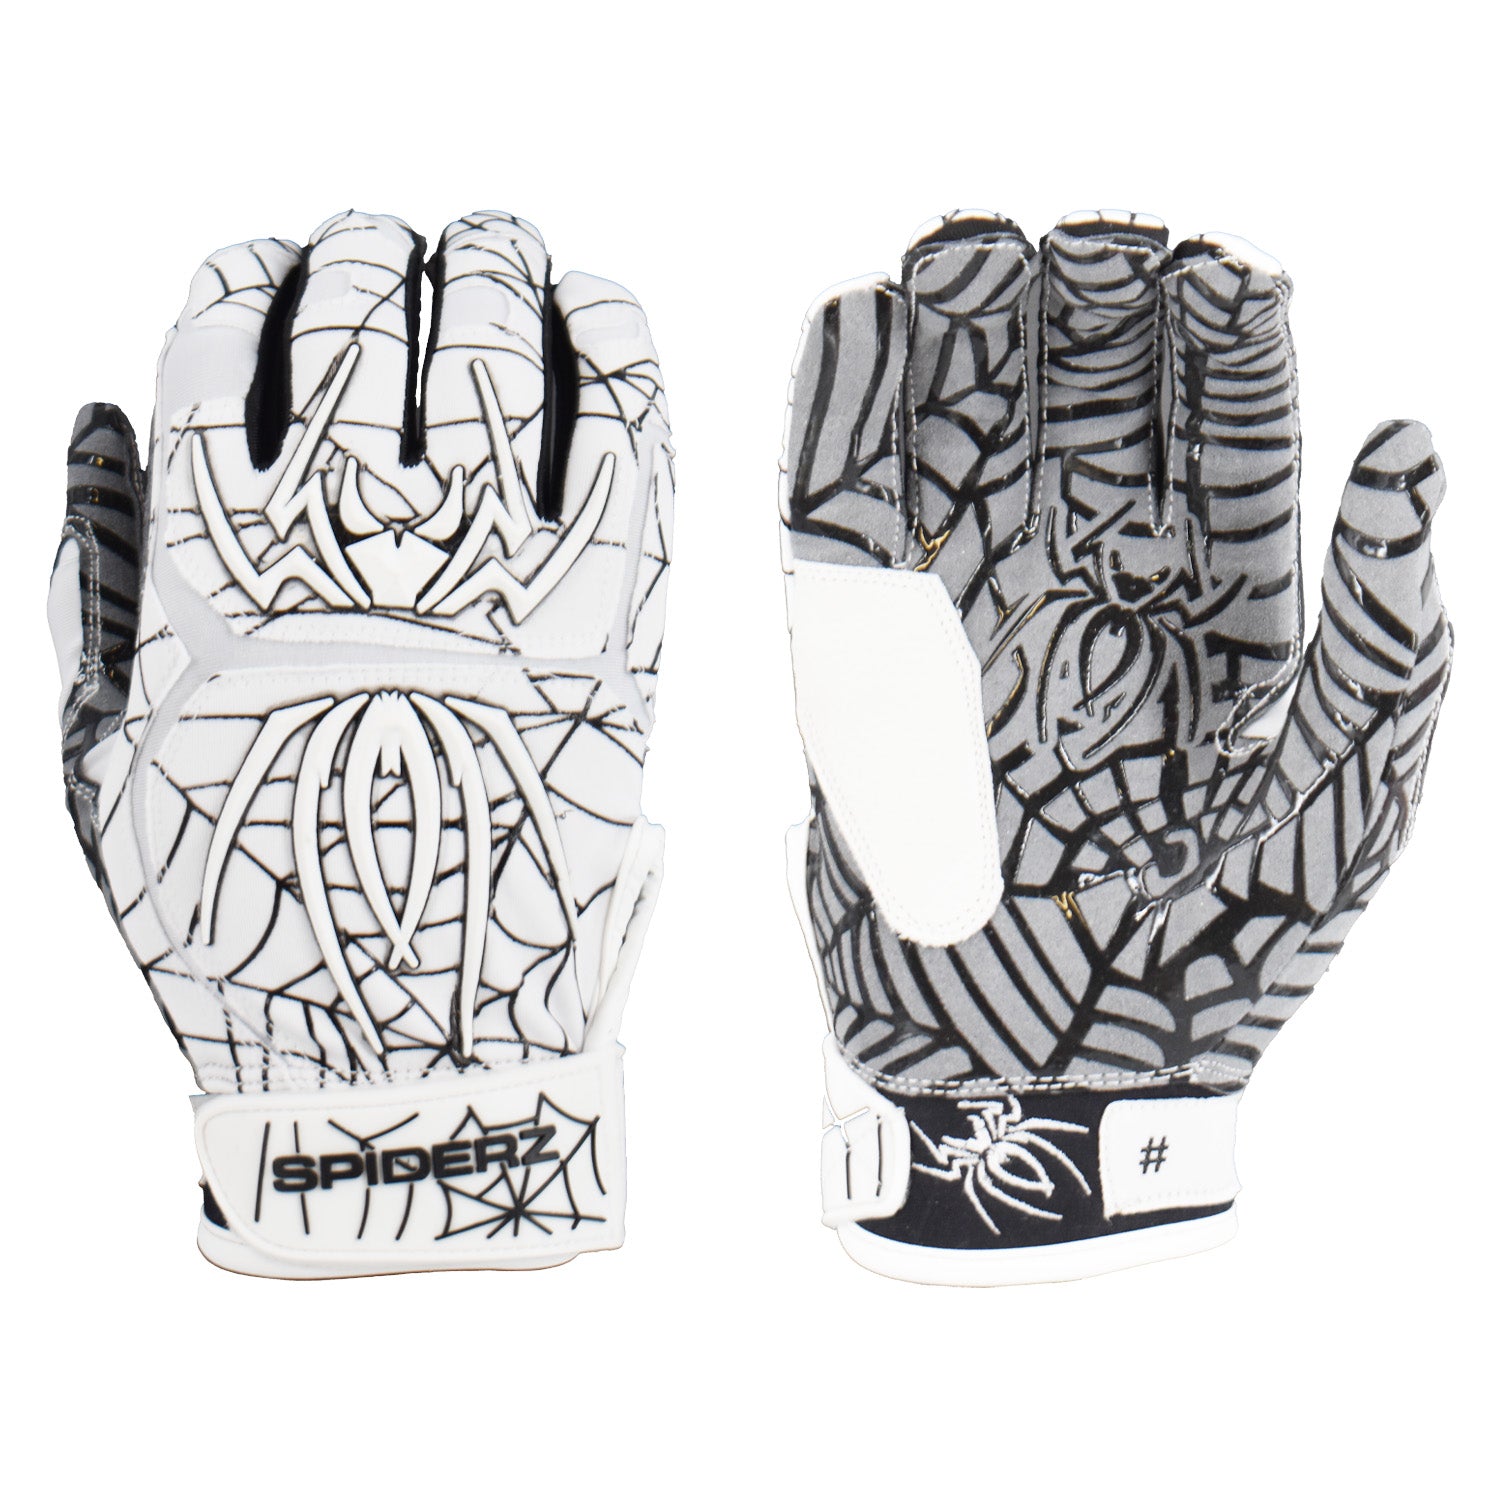 Spiderz HYBRID Batting Gloves - White/Black